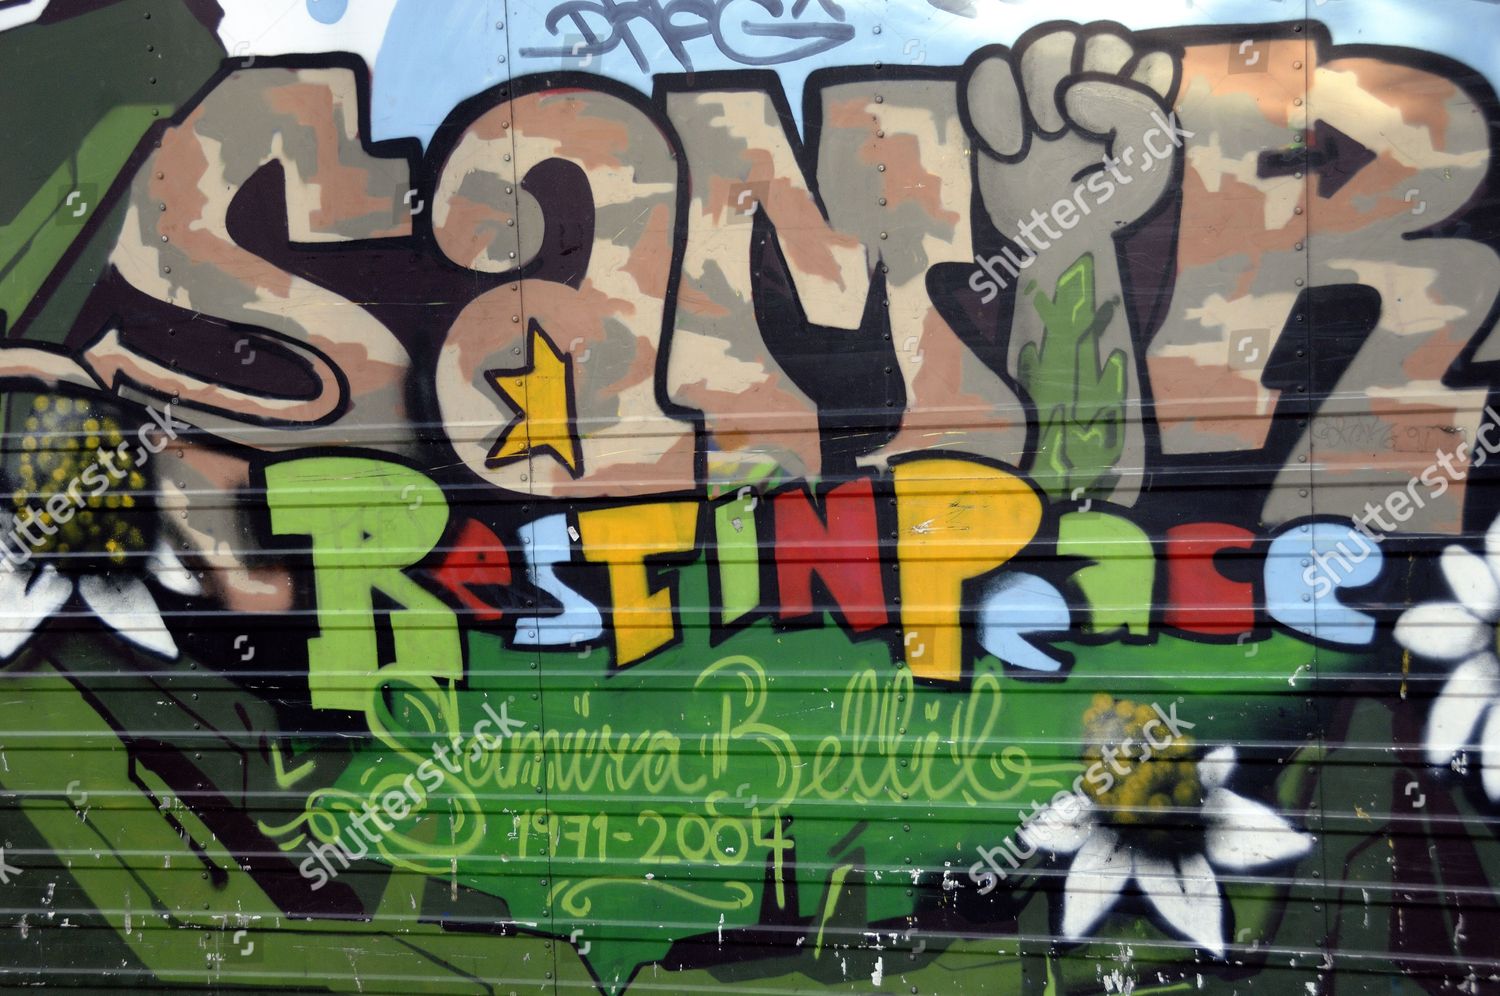 graffiti vans paris